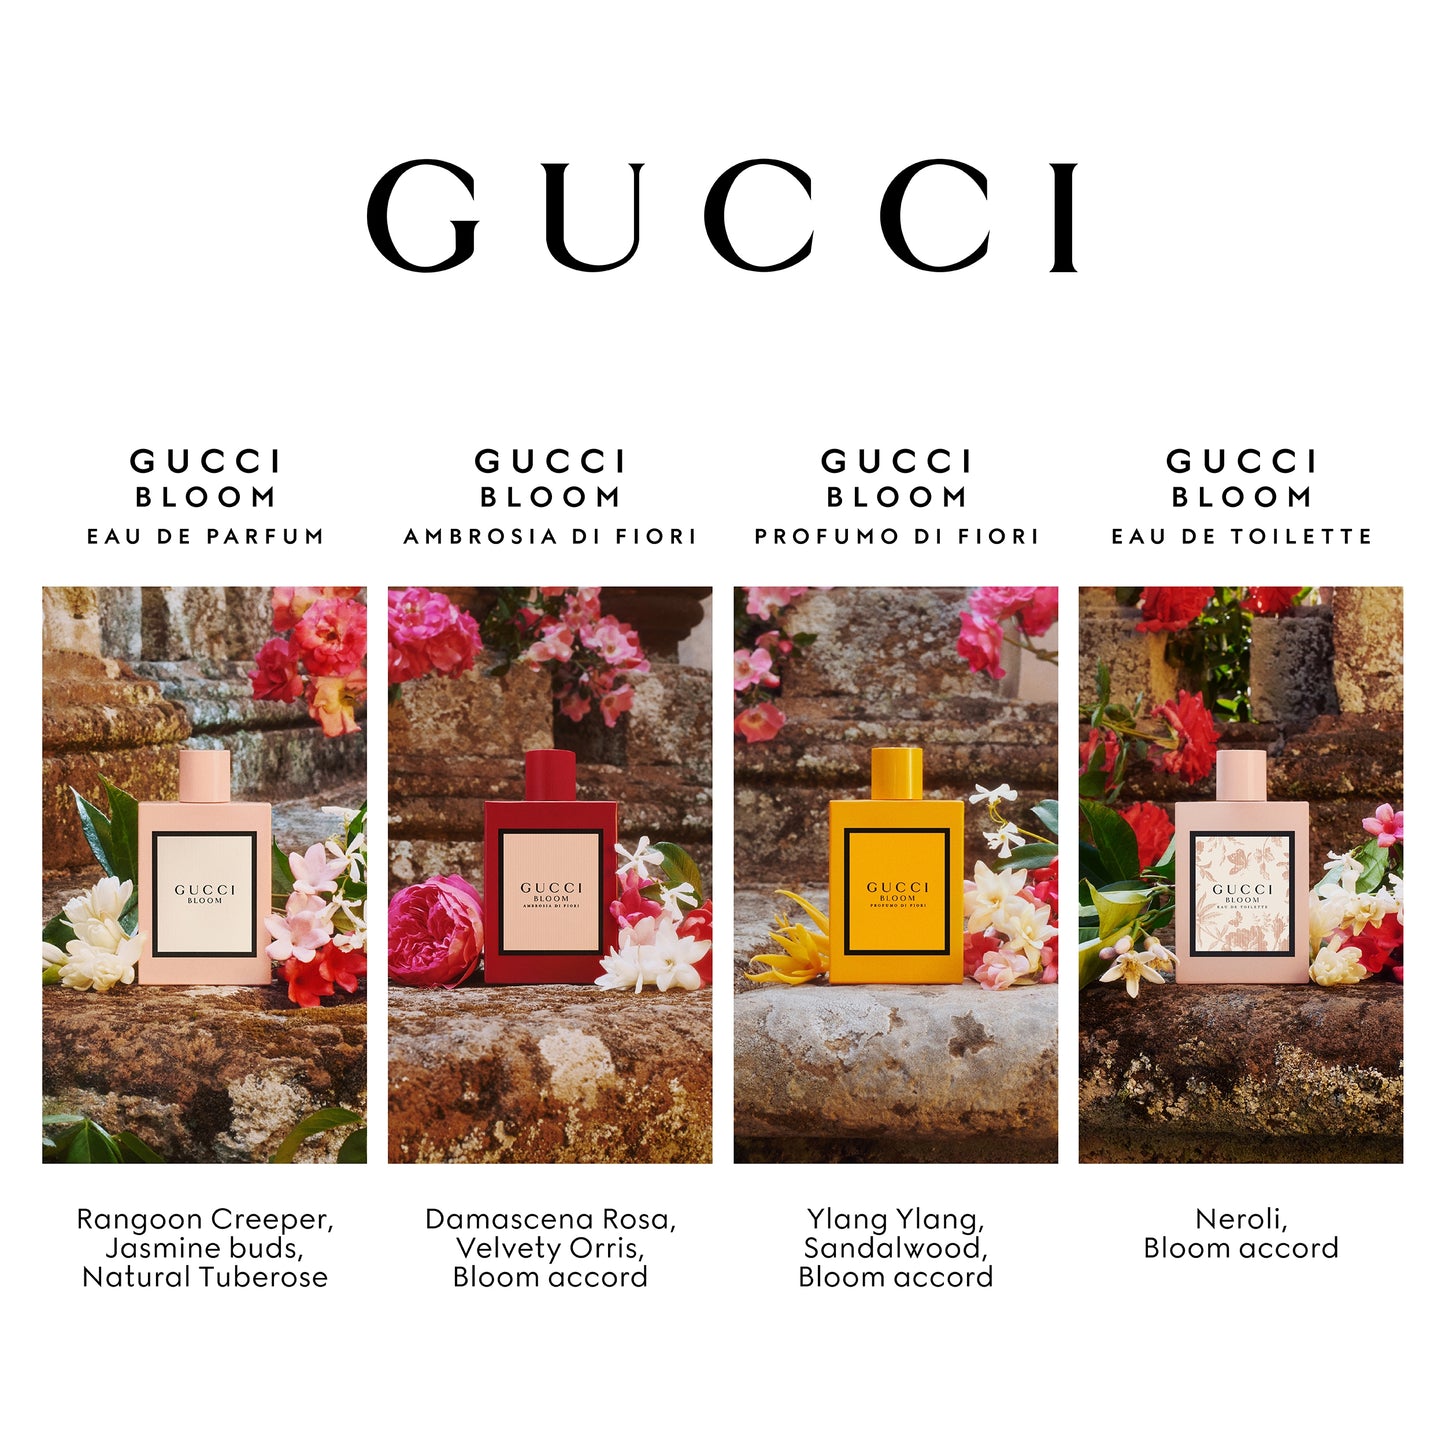 Gucci Bloom Profumo Di Fiori Eau de parfum 100 ML